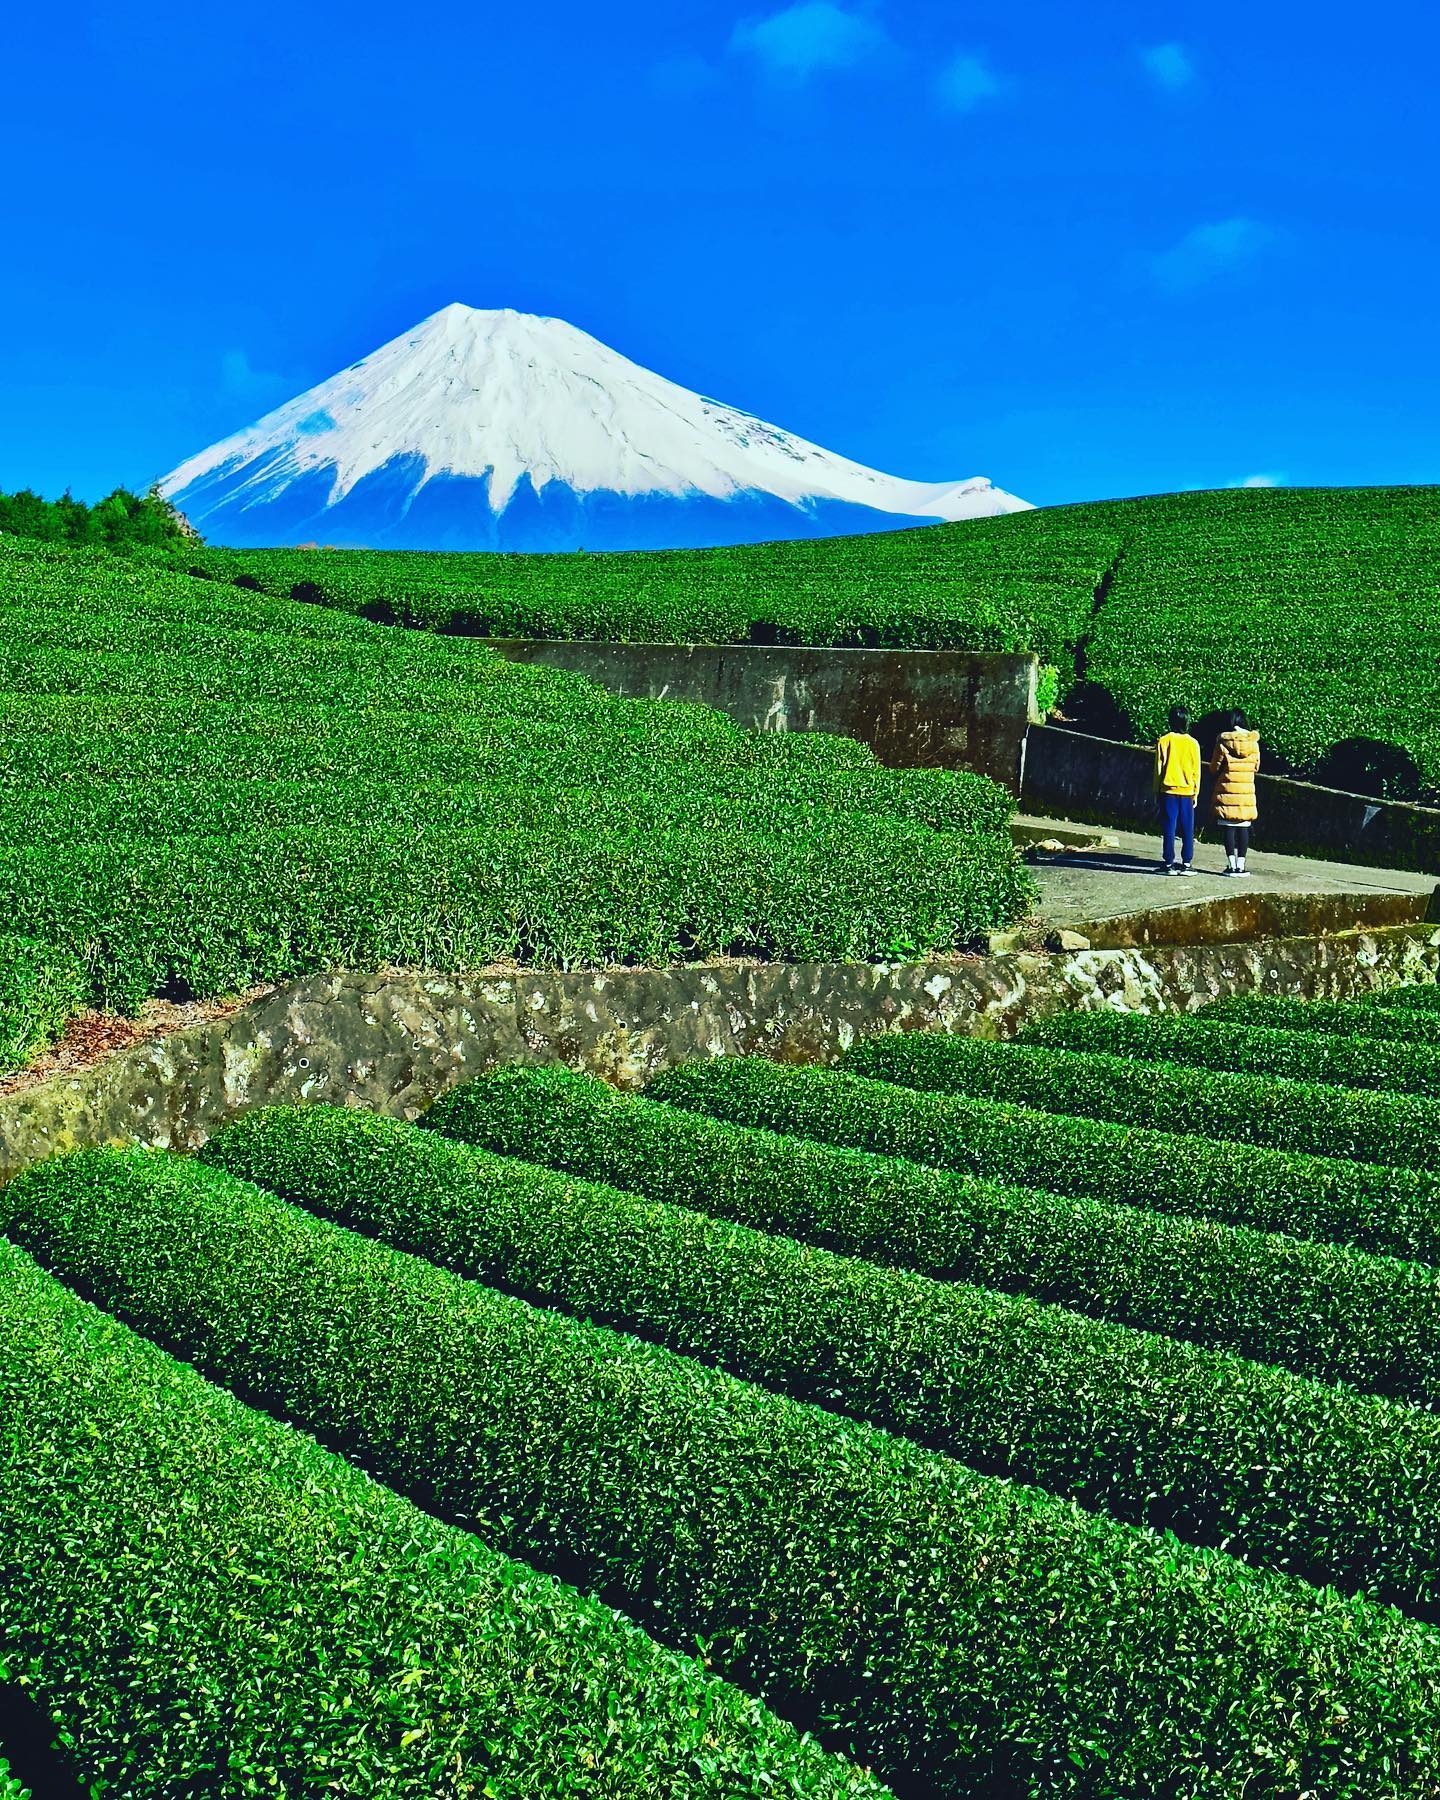 🇯🇵 【靜岡 Shizuoka】大淵笹場
🗻 「大淵笹場」是知名的富士山眺望景點，以高低錯落的翠綠茶田與富士山交織的絕景知名
🌞冬季日本天際通常較為清澈湛藍，加上白雪富士山山頭，色彩更為豐富，是拍攝富士山的好機會。
🍵 日本的茶鄉静岡，出產日本40％的茶葉。茶田風光遠近馳名，許多電視節目都曾前來取景，尤其每年五月新綠時刻最為著名#japantravel #shizuoka #mtfuji #obuchisasaba #靜岡 #大淵笹場 #富士山 #把世界當教室🌍 #travelwithmikeanna